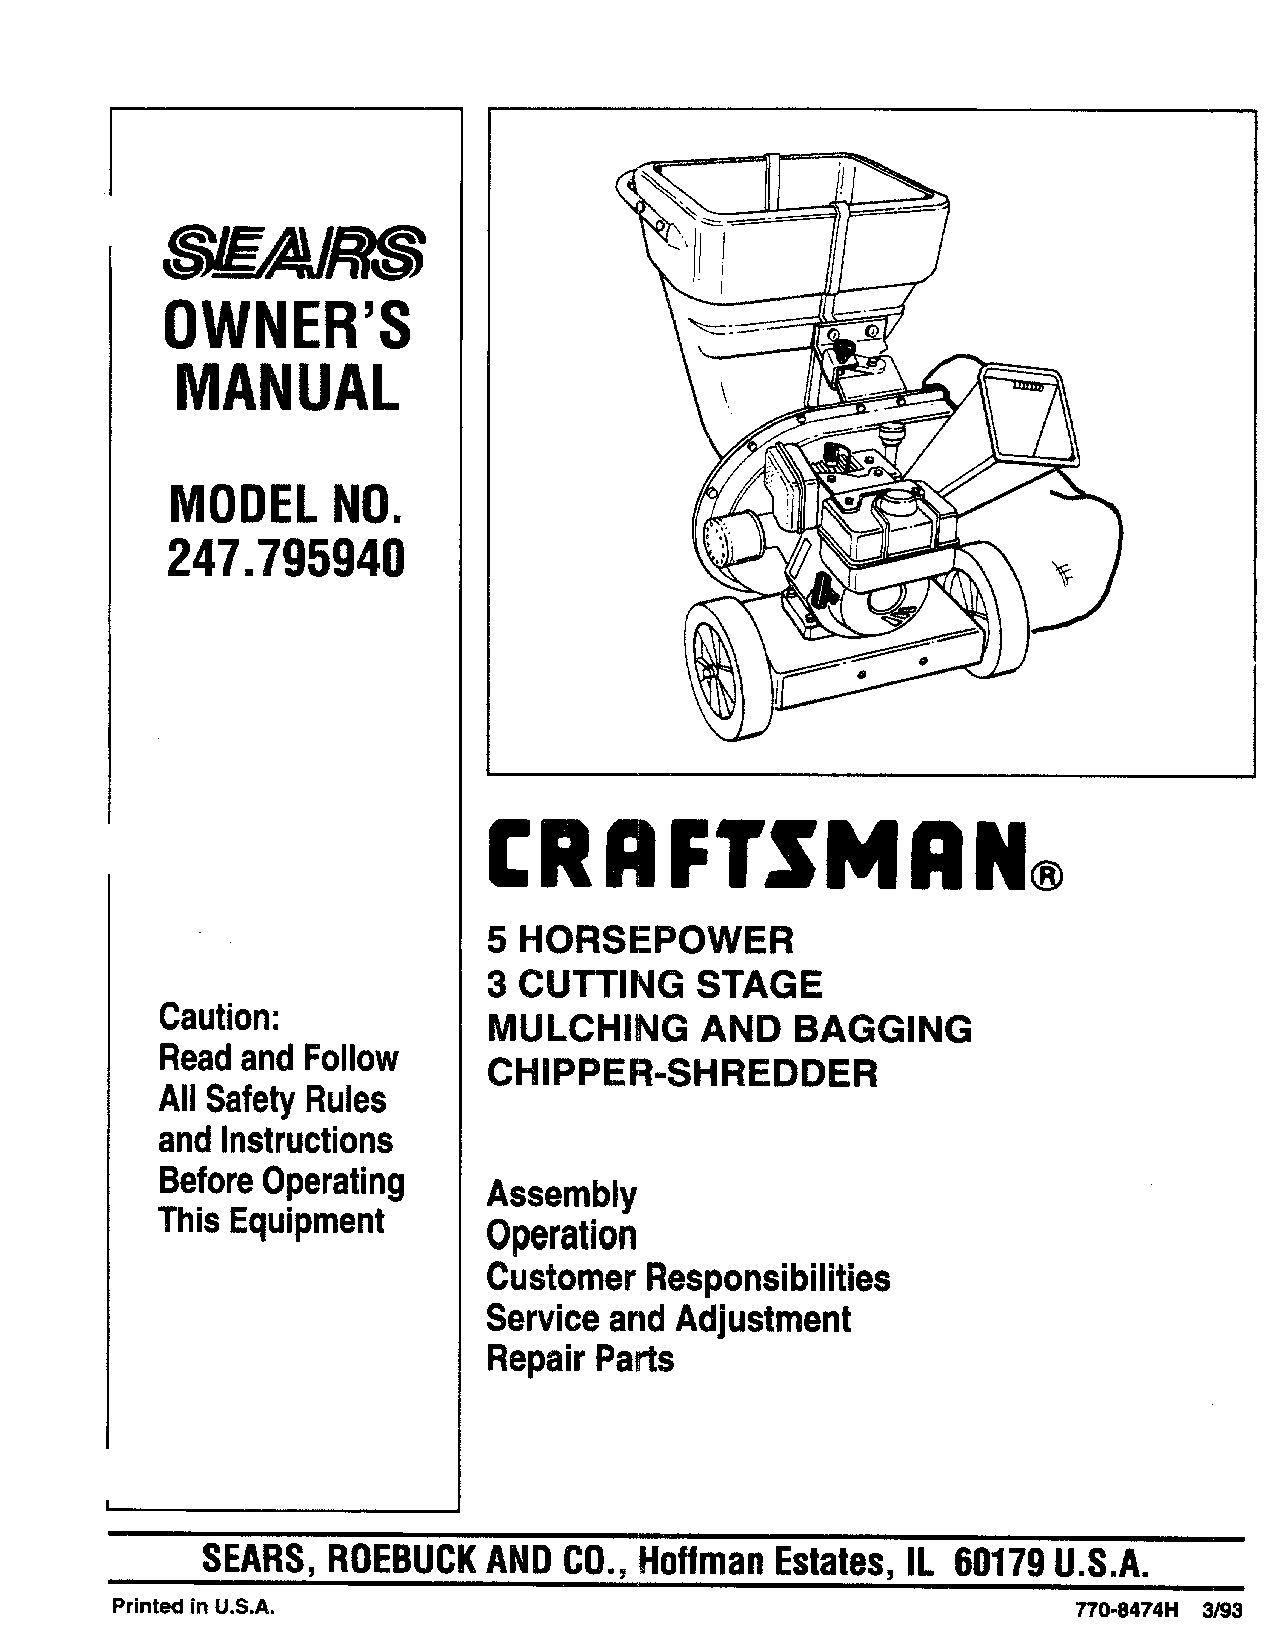 Craftsman 247.79594 User Manual